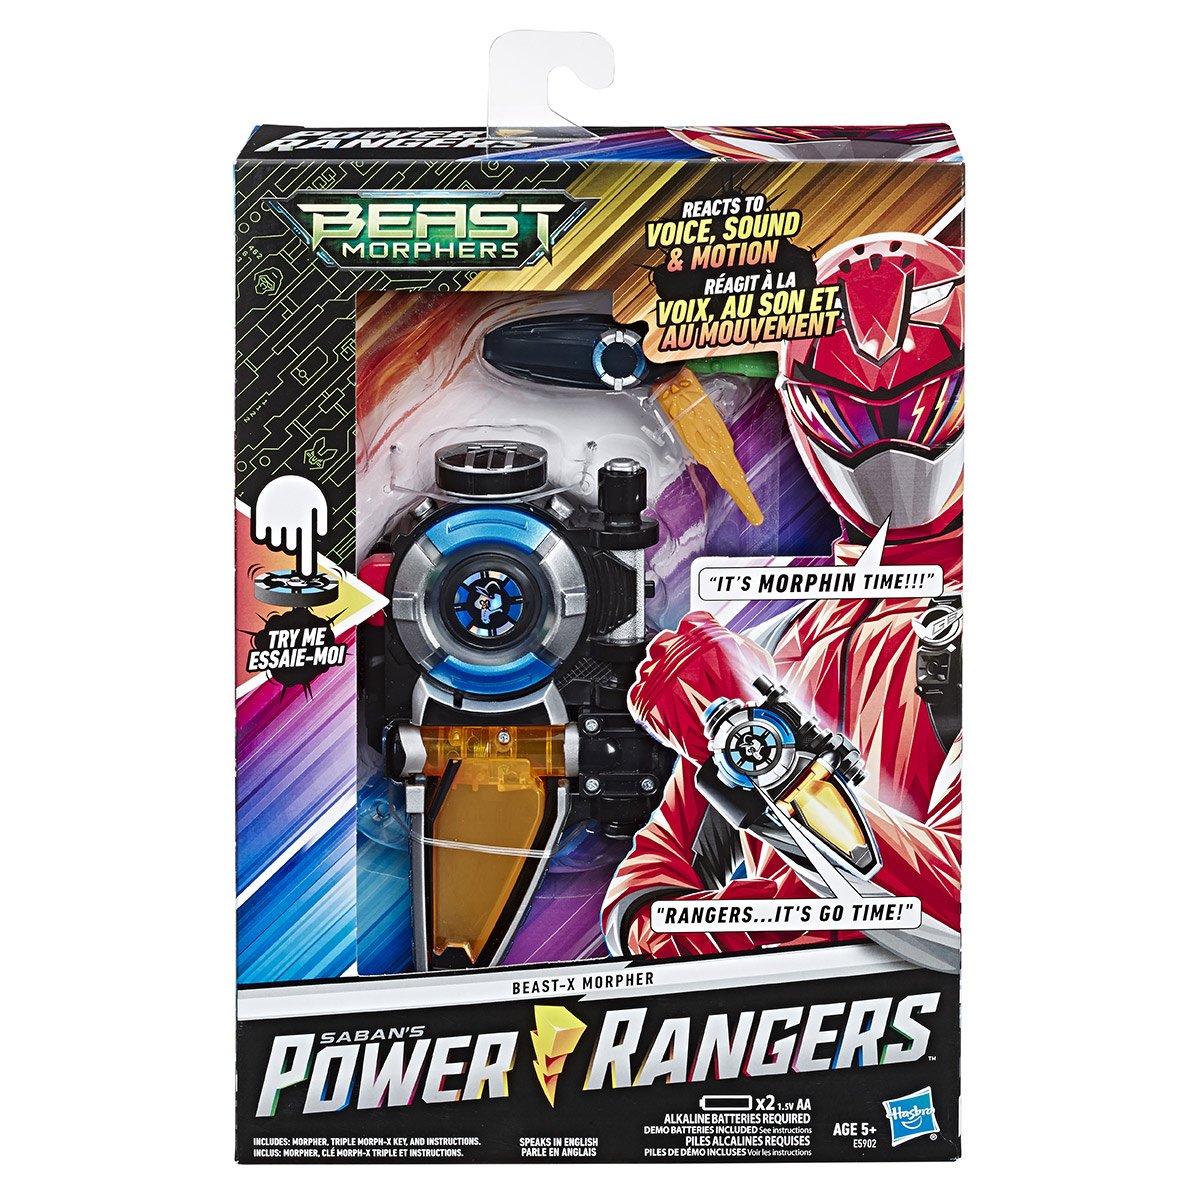 jouet power rangers